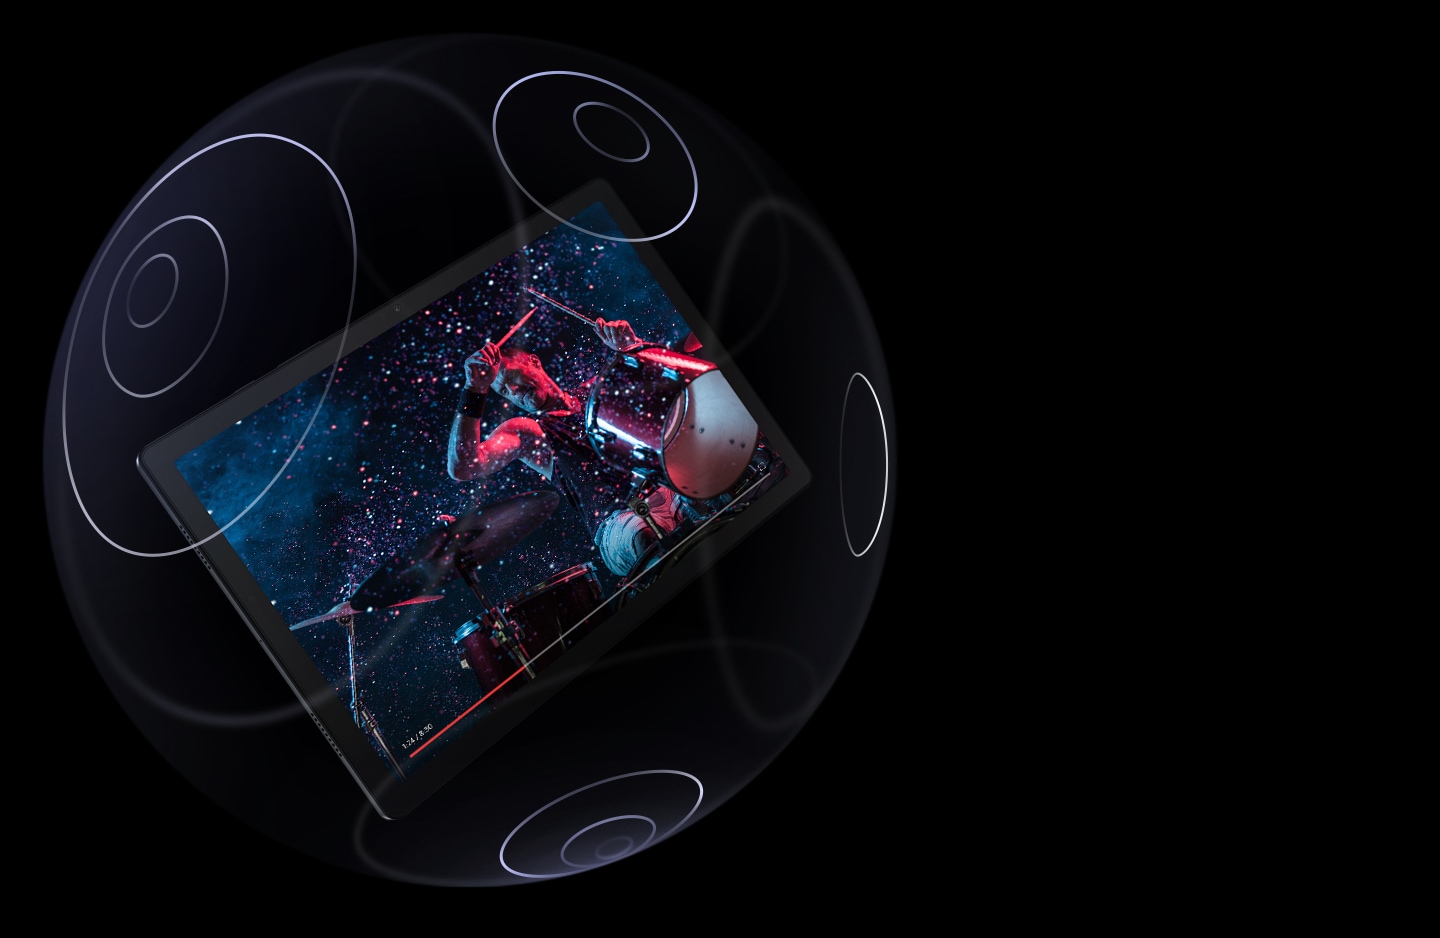 Prikazan je Galaxy Tab A8 kako lebdi unutar prozirne kugle koja na površini ima označene koncentrične krugove. Na zaslonu je prikazan čovjek koji svira bubnjeve uz traku napretka na dnu zaslona.